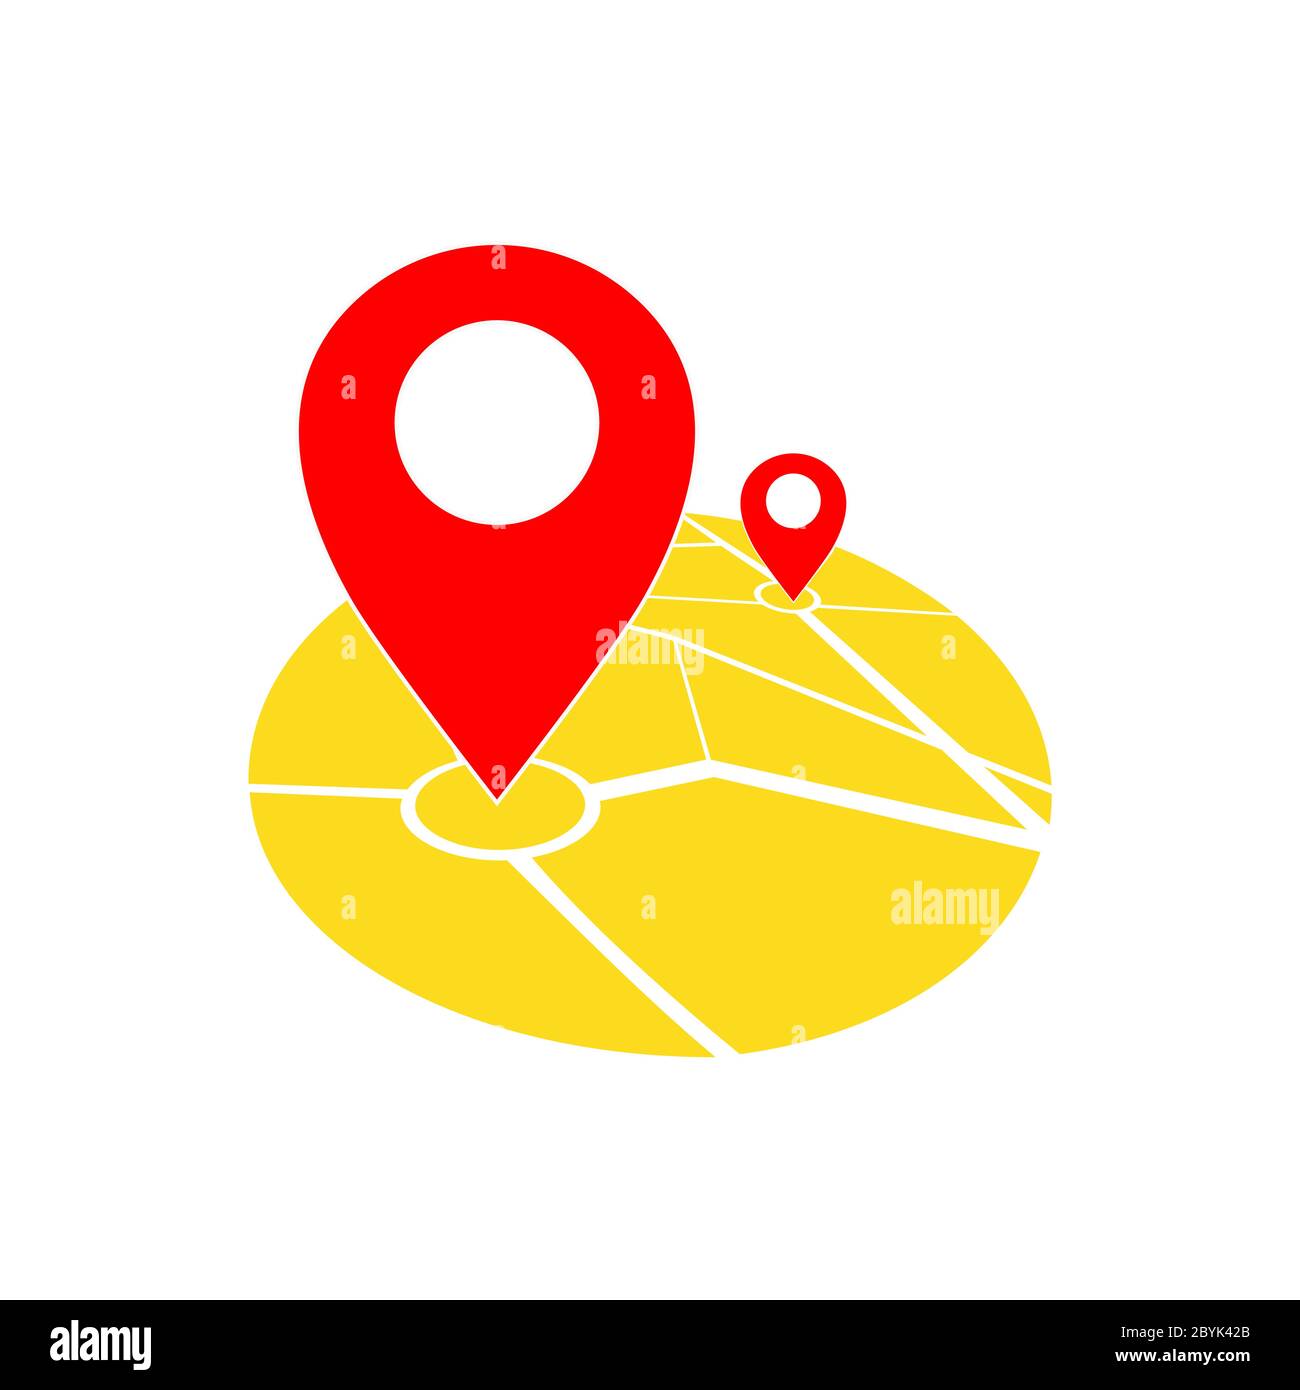 Posizione della mappa, puntatore, icona della geolocalizzazione in rosso e  giallo o geolocalizzazione, navigatore gps, su sfondo bianco isolato.  Vettore EPS 10 Immagine e Vettoriale - Alamy